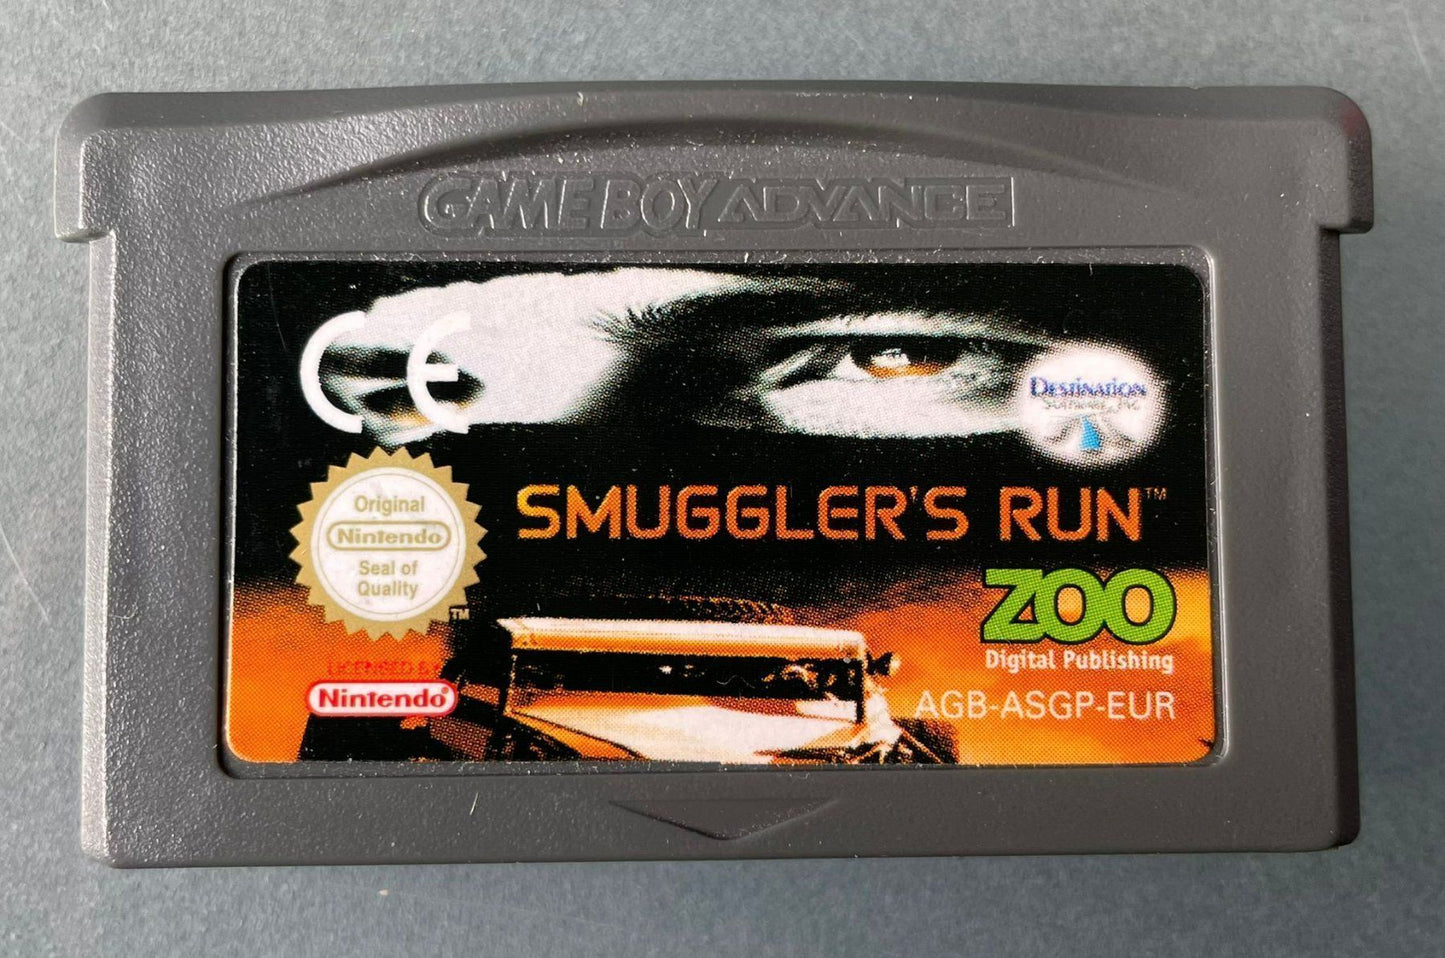 Smuggler's run GBA